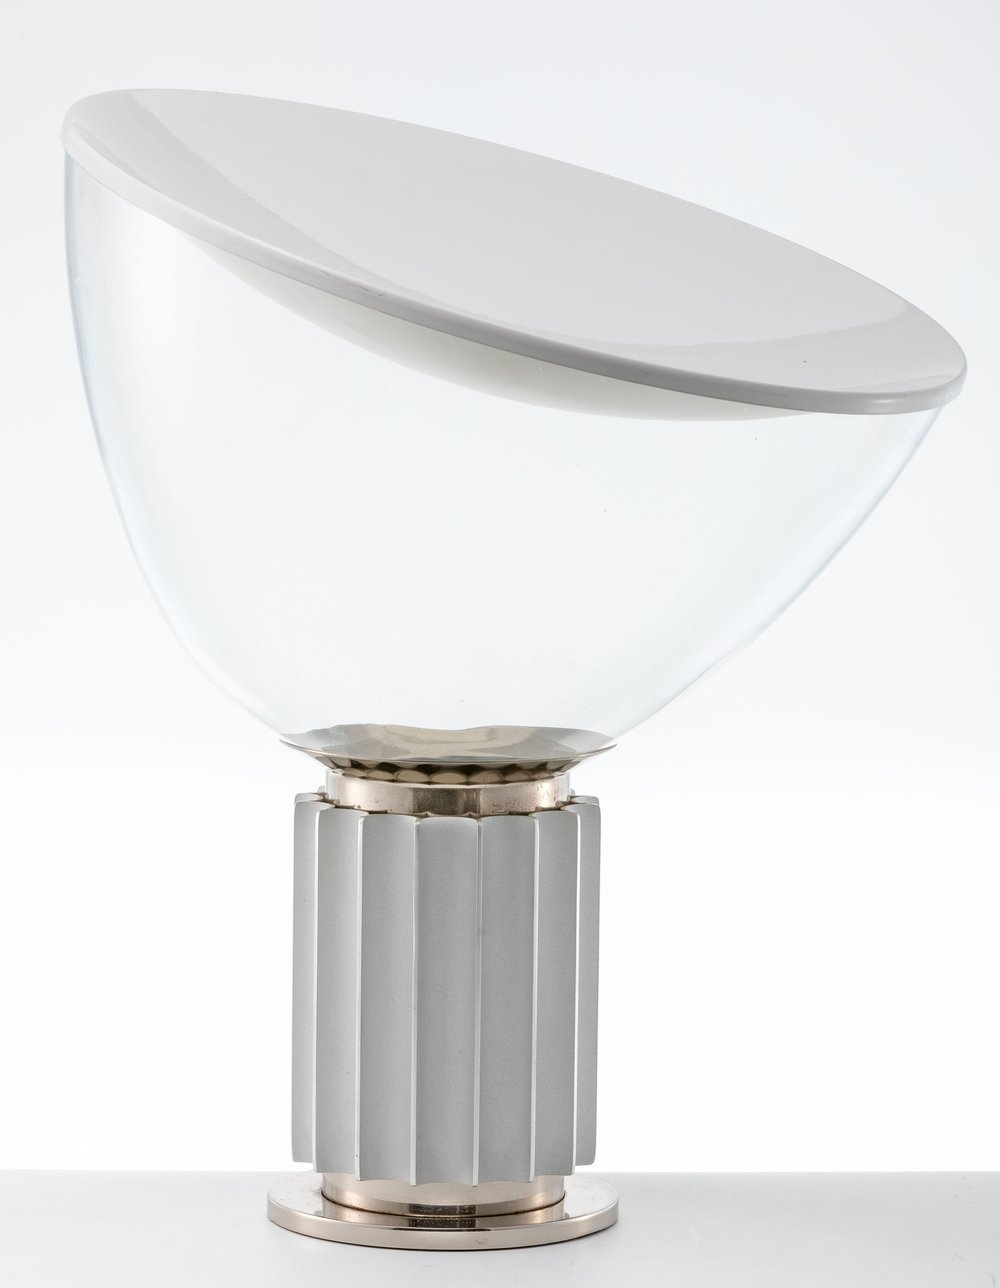 Tischlampe "Taccia" Flos, Brescia, Italien - Image 2 of 2